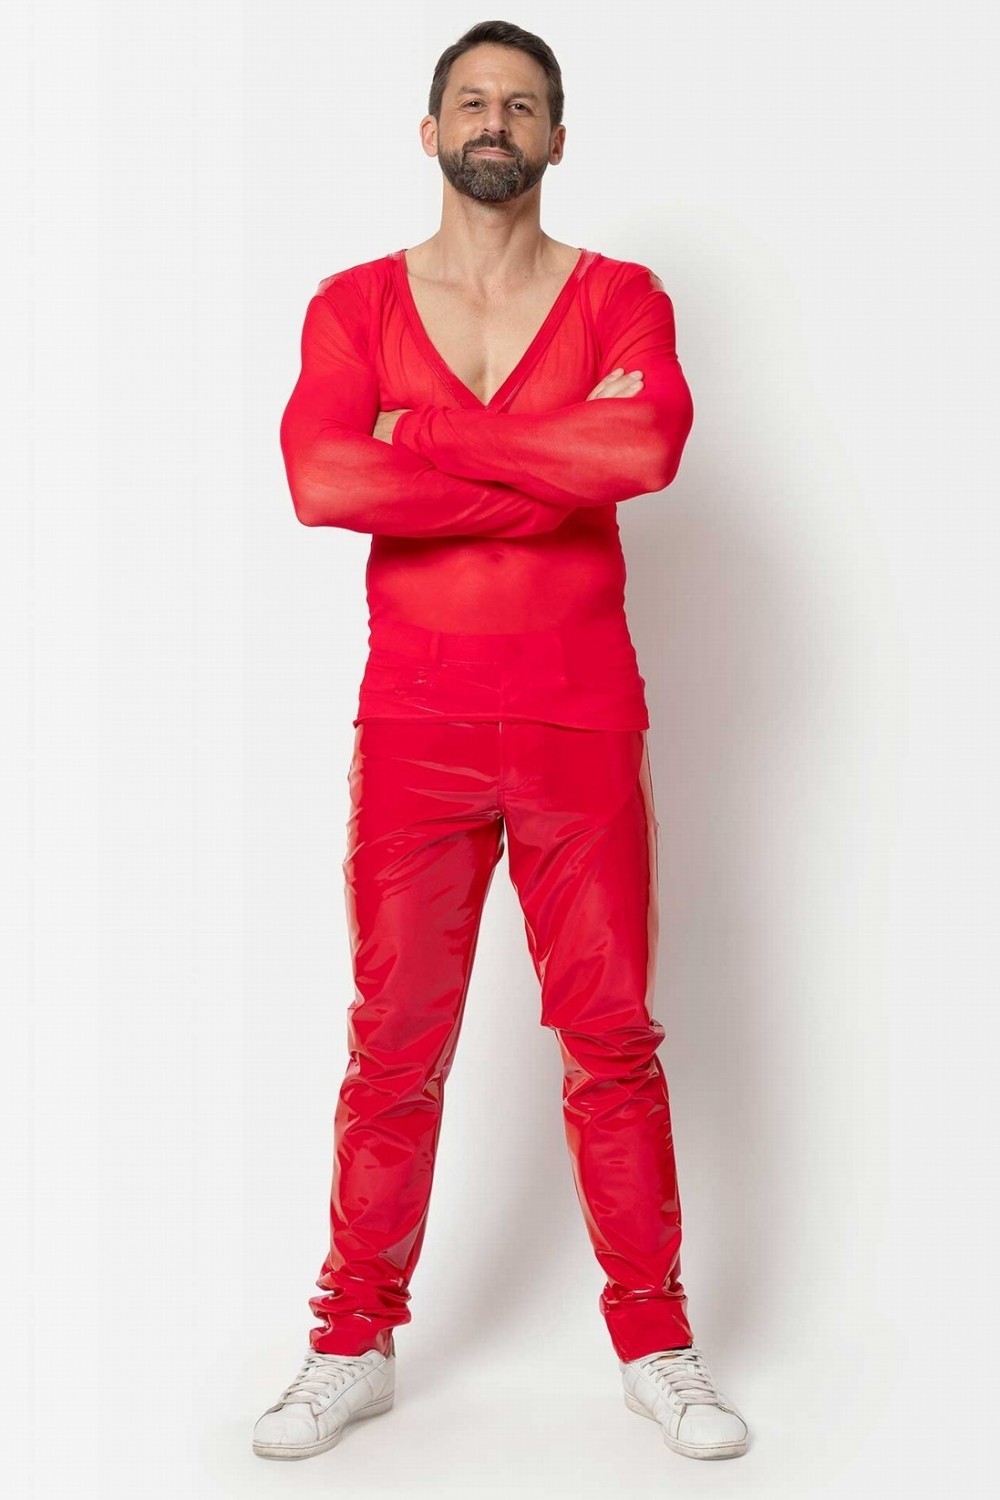 Shawn, pantalon homme vinyle rouge - Patrice Catanzaro Site Officiel